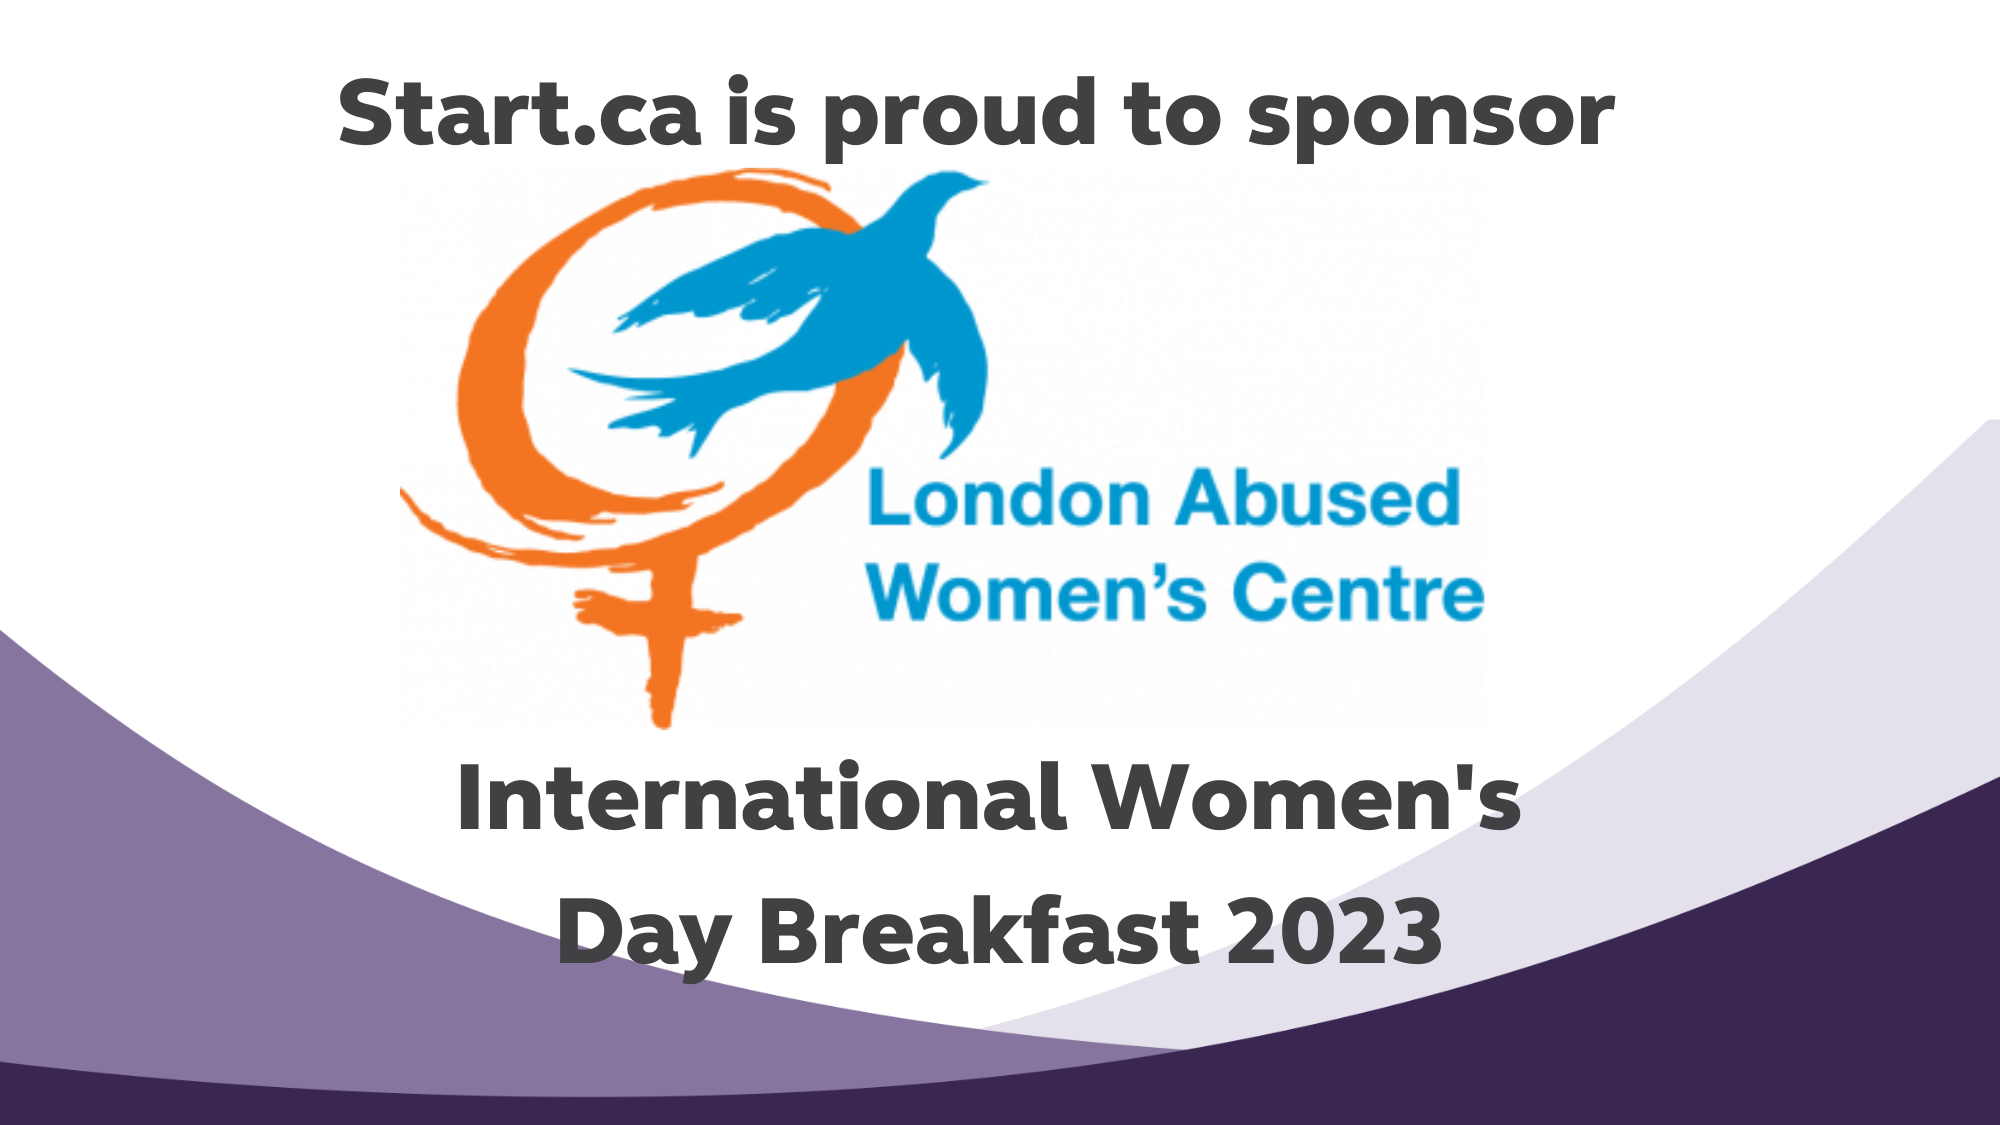 Start.ca is proud to sponsor the LAWC International Women's Day Breakfast